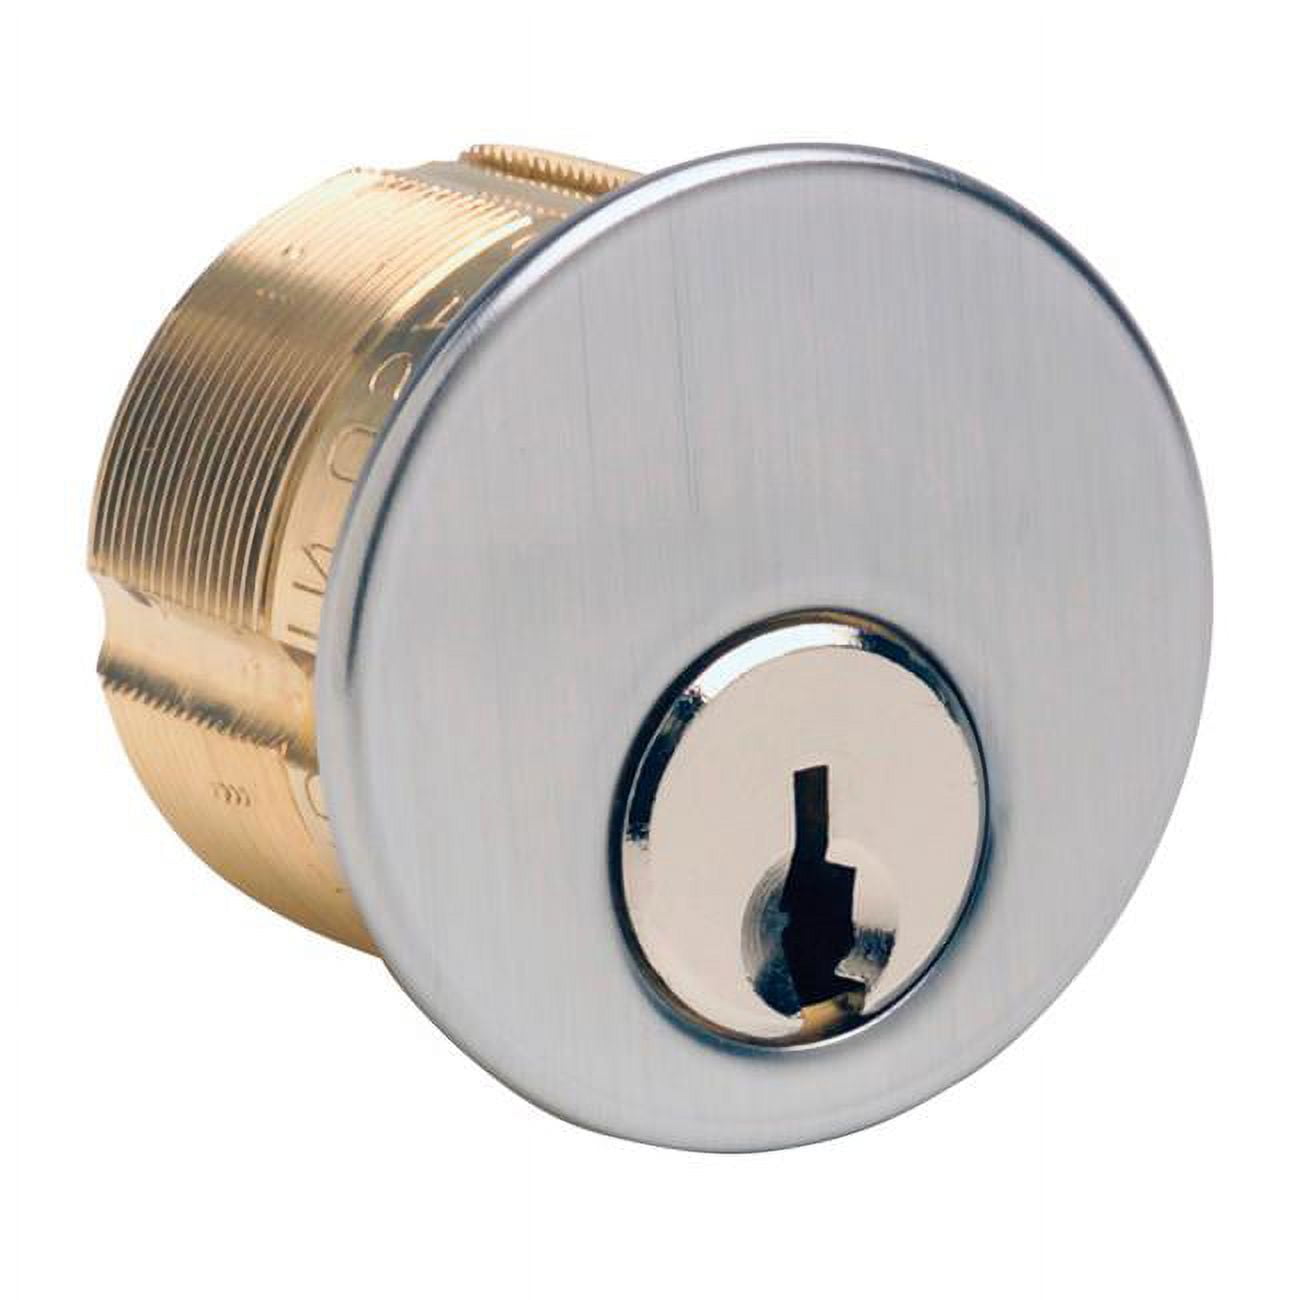 5001724 Kw9 Chrome Brass Mortise Cylinder Keyed Alike - Case Of 10